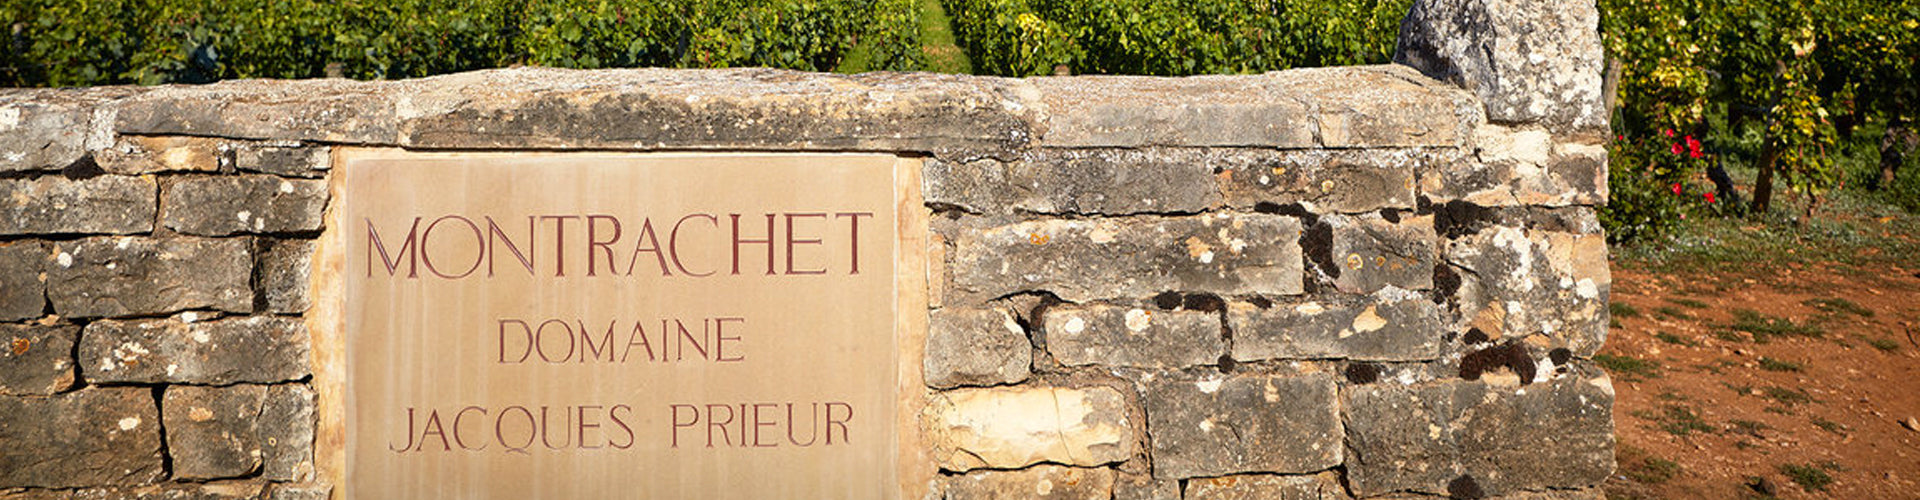 Domaine Jacques Prieur Montrachet Vineyard